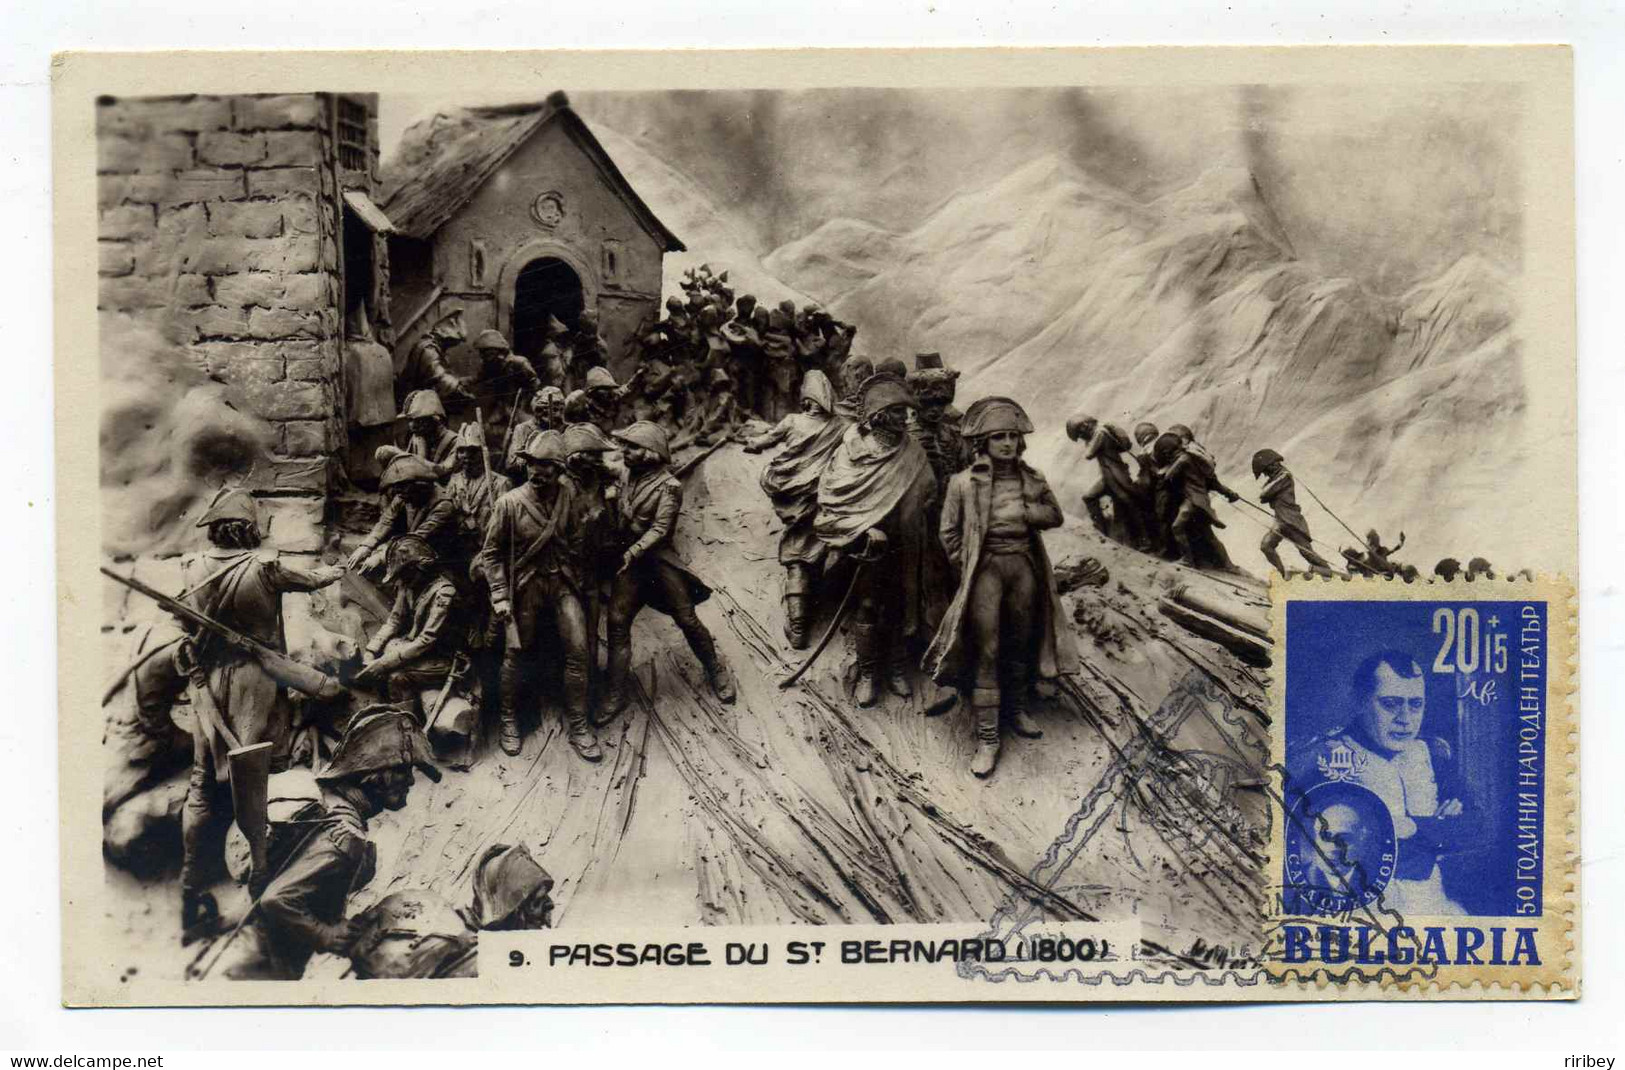 Collection Napoléon Bonaparte / Non dentelé, epreuve de luxe, timbres OR, 1er jour  / 7 scans